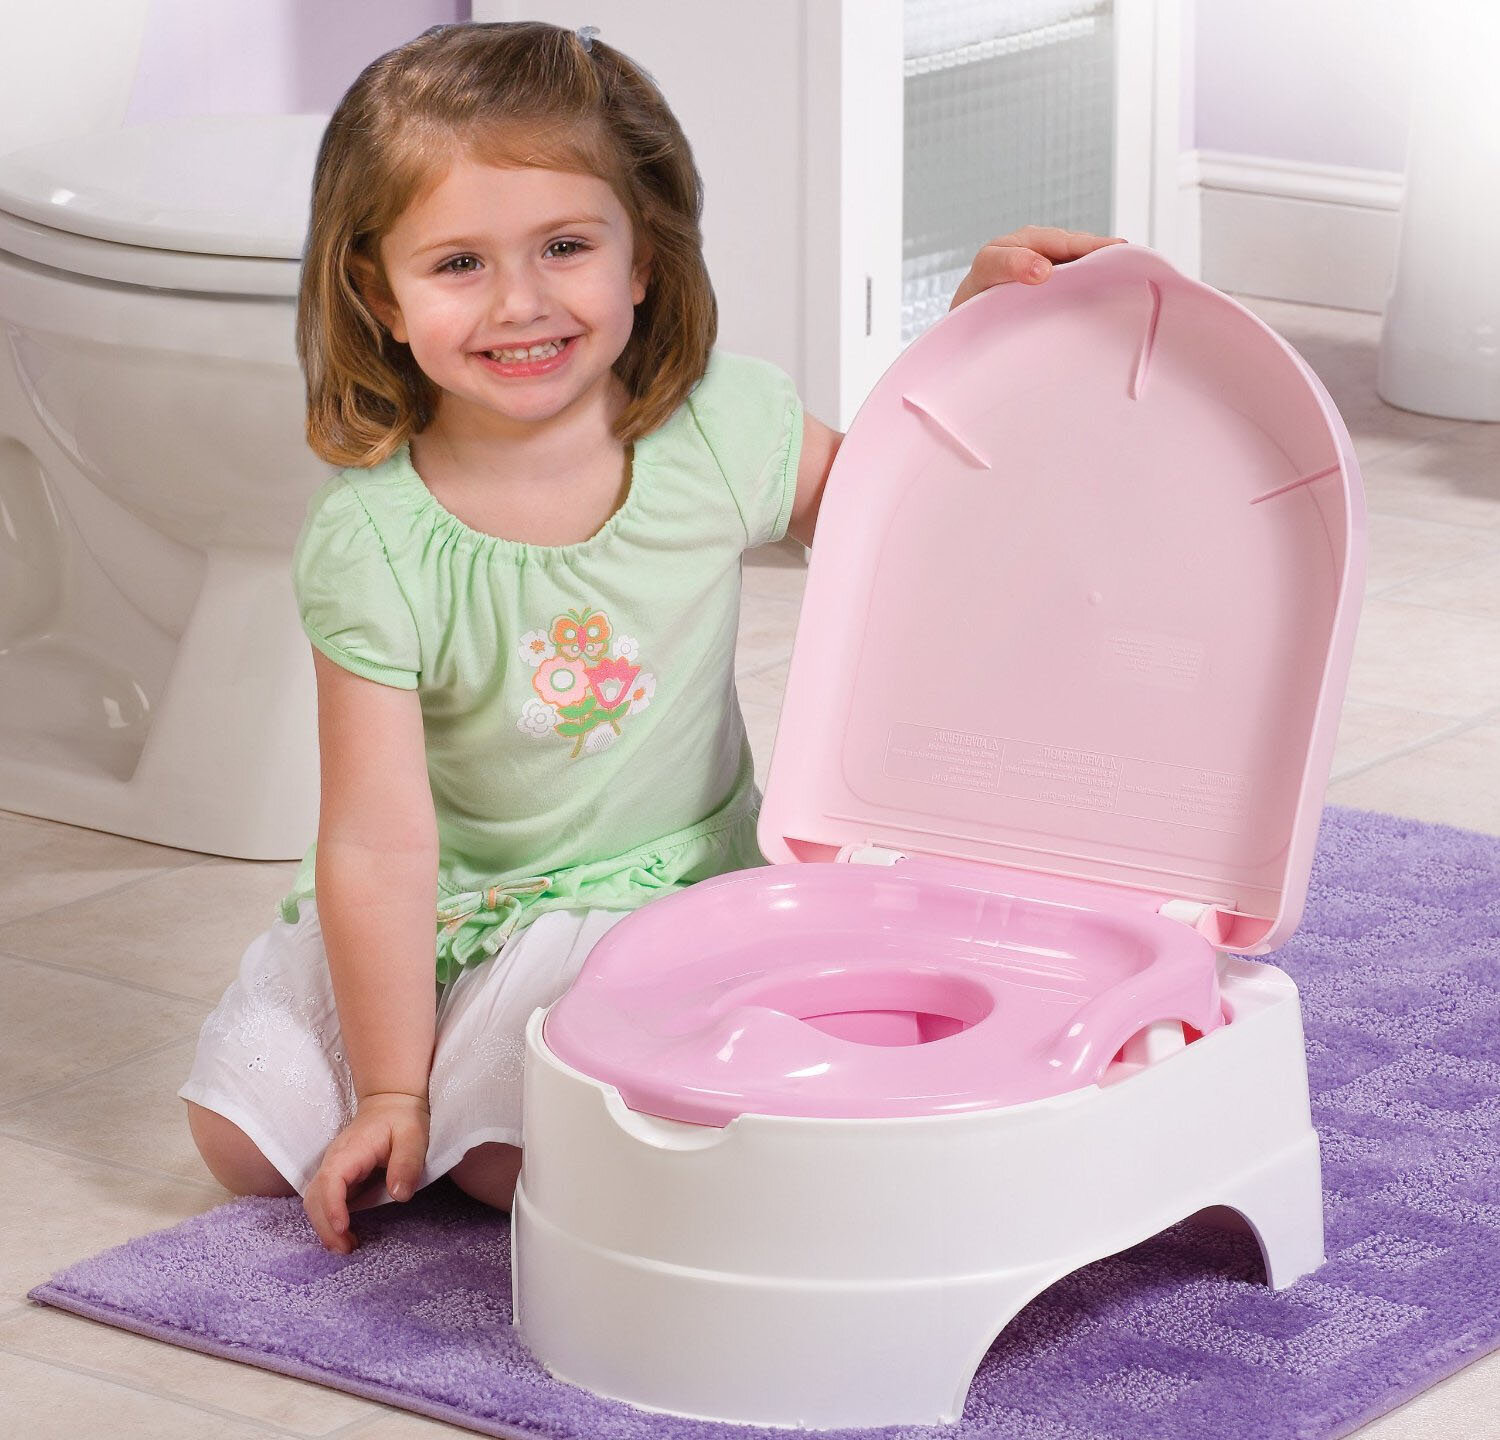 Bô vệ sinh là vật dụng cần thiết trong sinh hoạt hàng ngày của bé